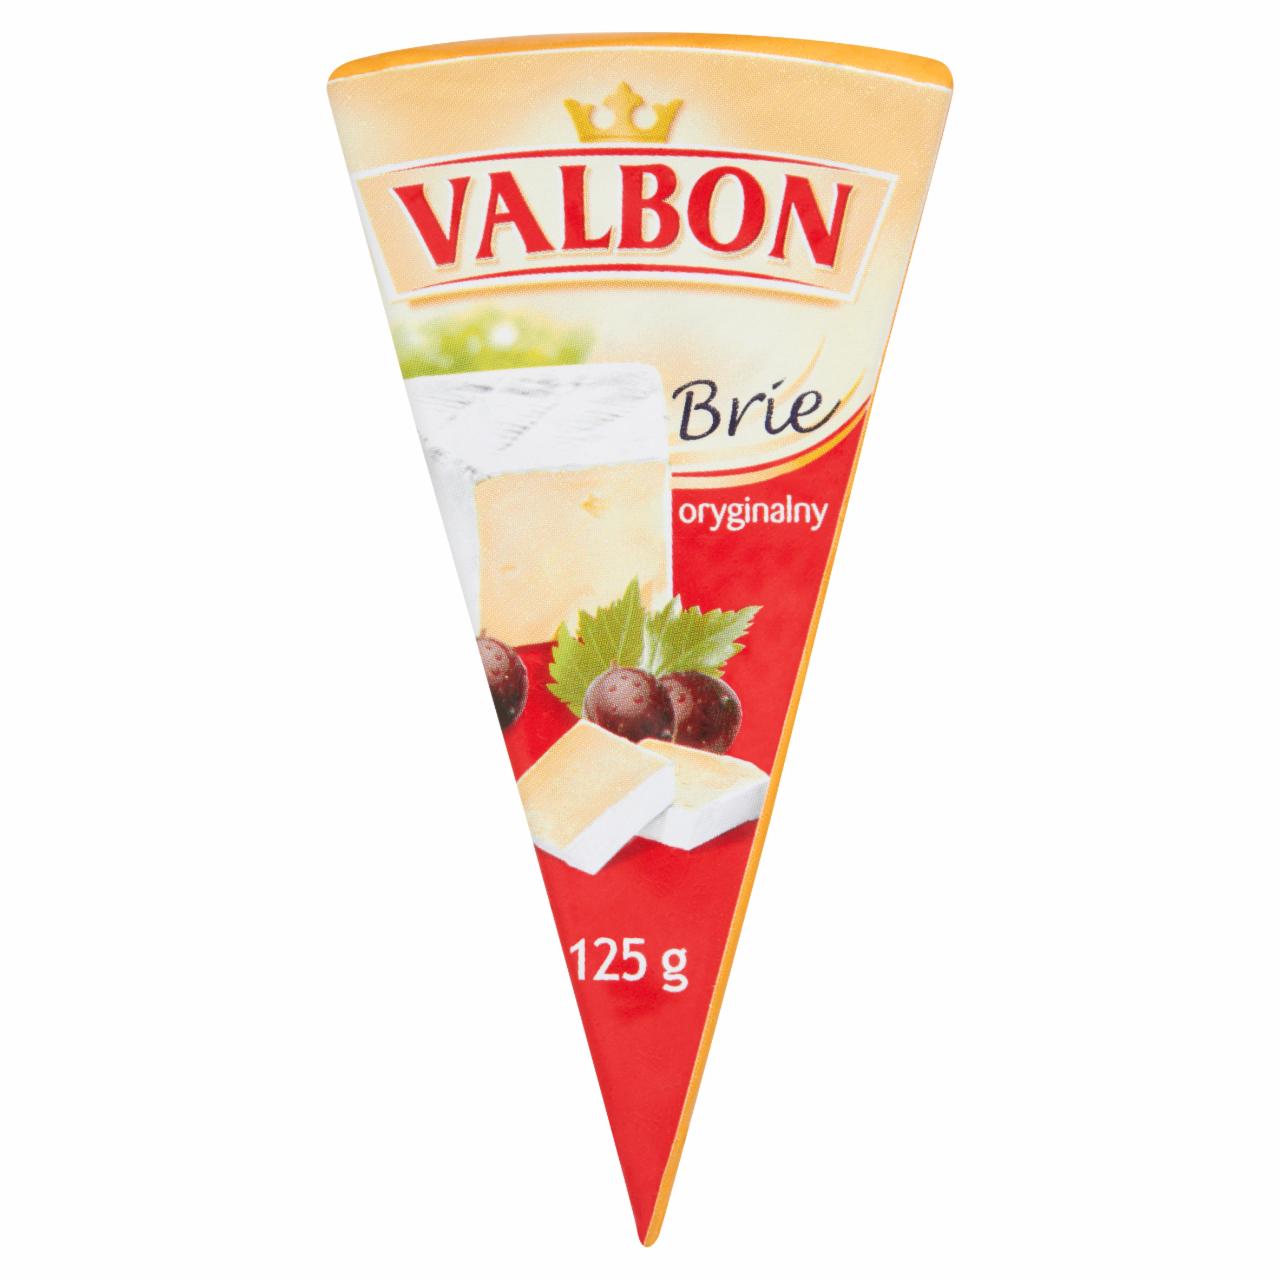 Zdjęcia - Valbon Brie oryginalny 125 g